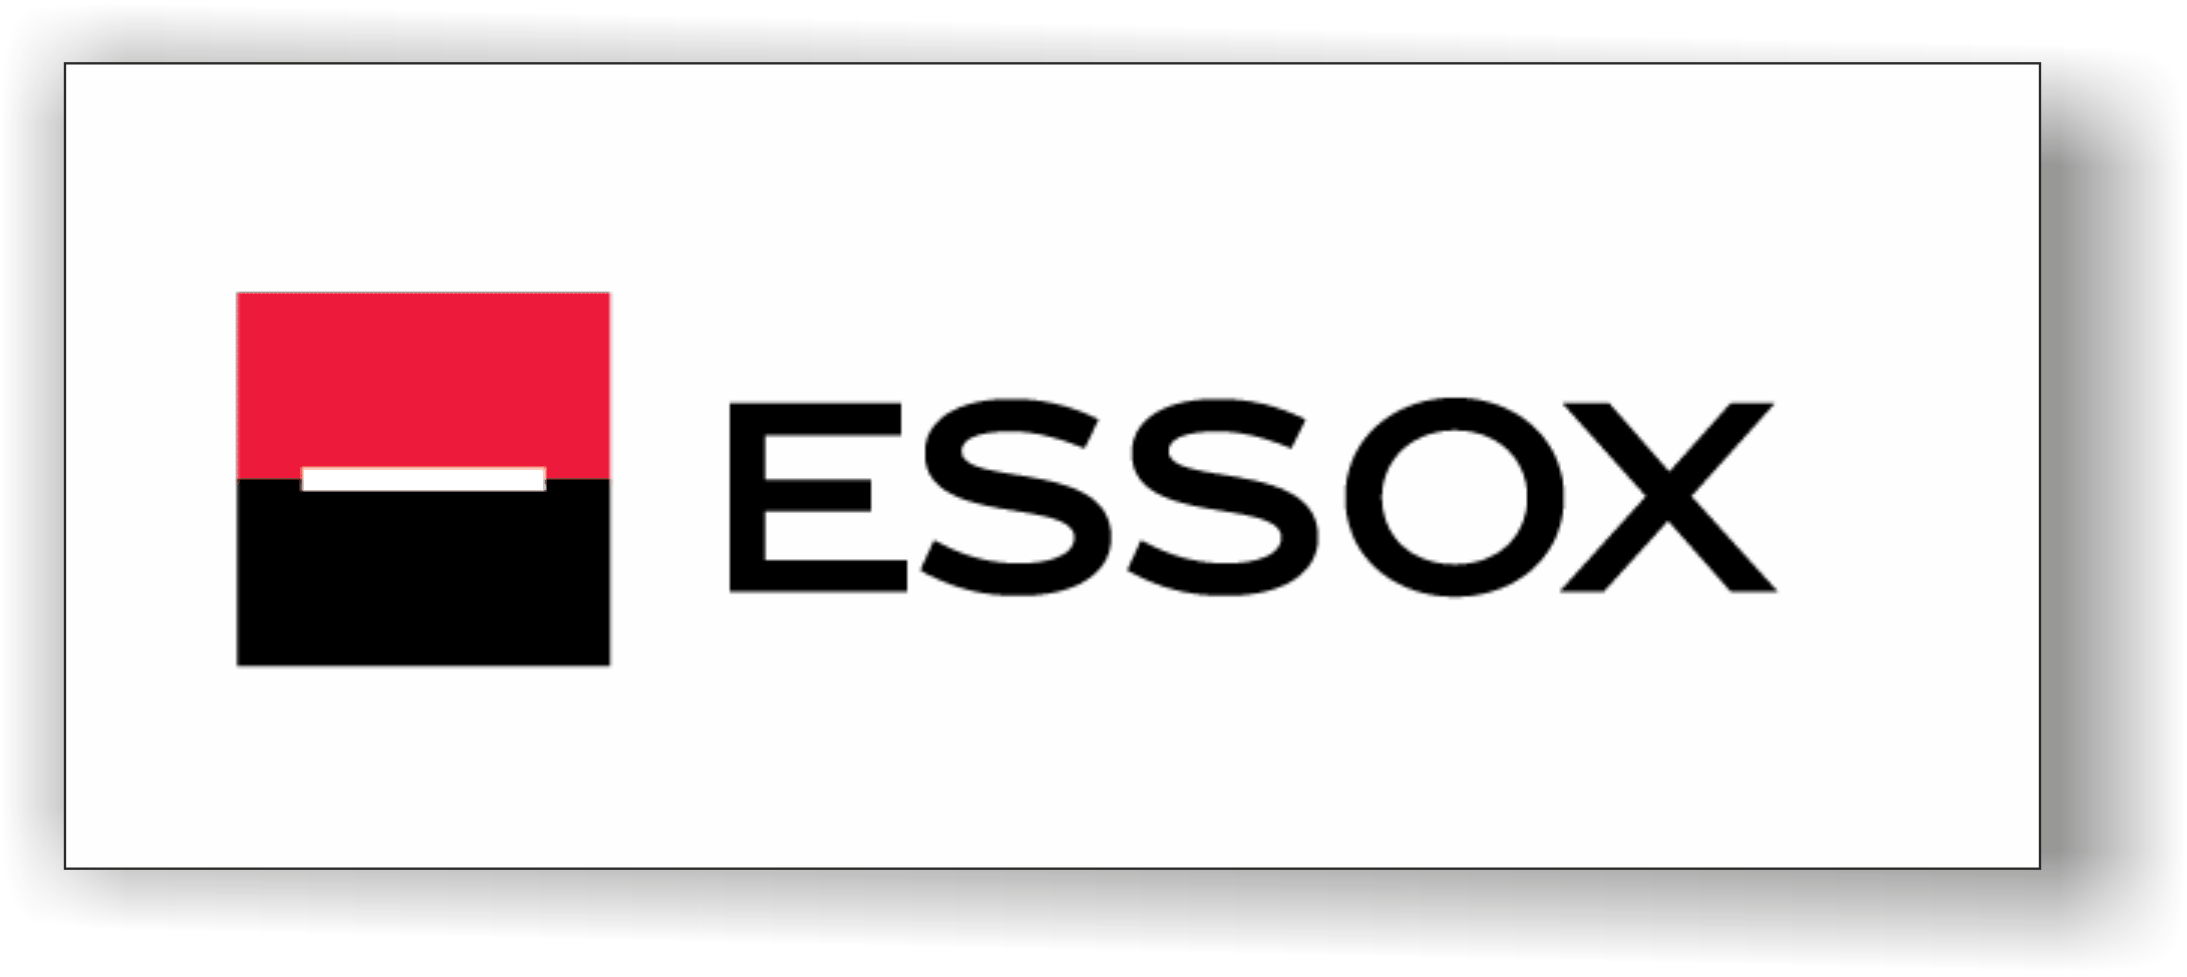 ESSOX logo